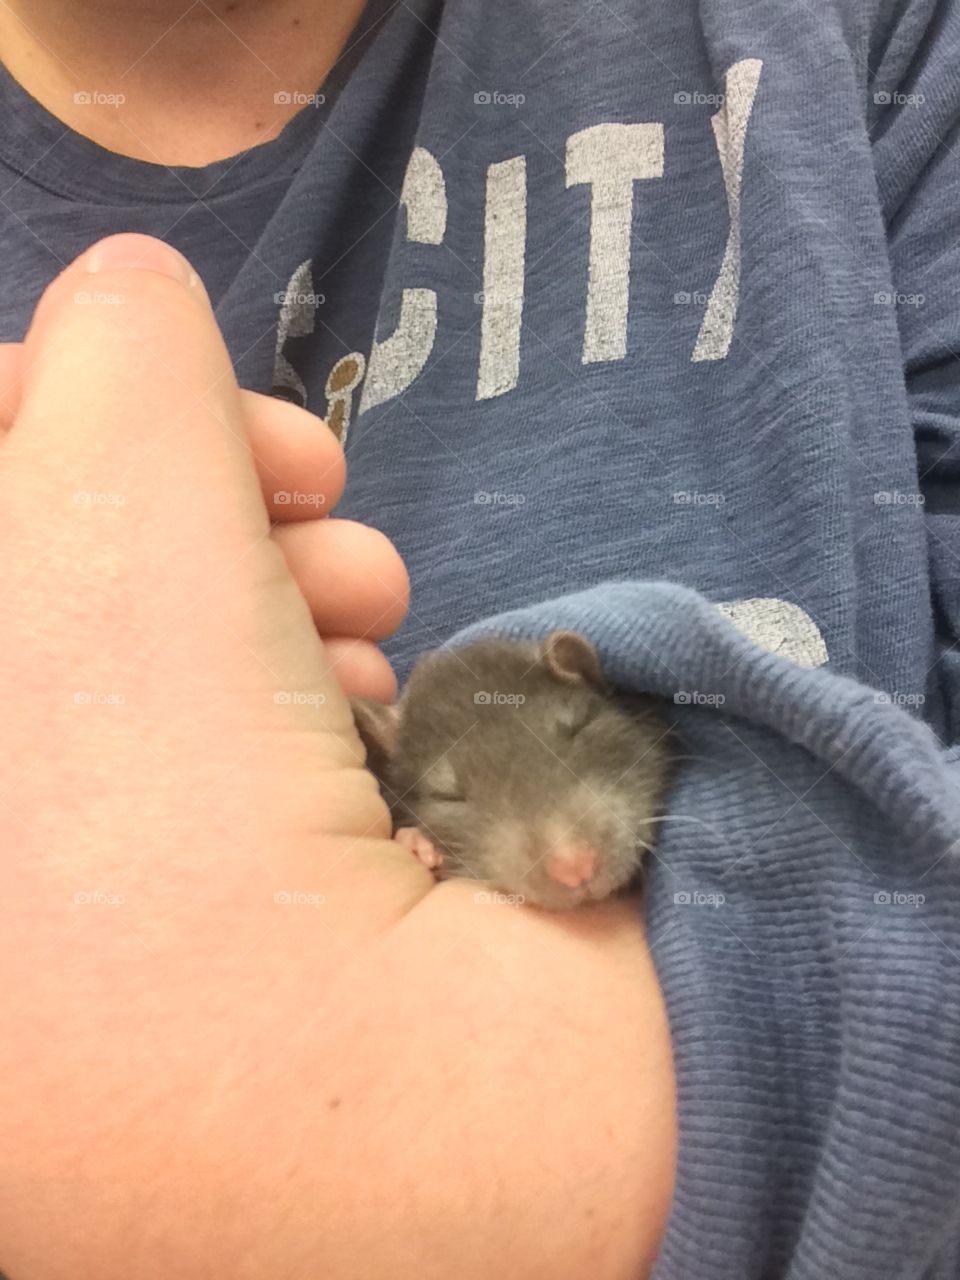 Baby rat